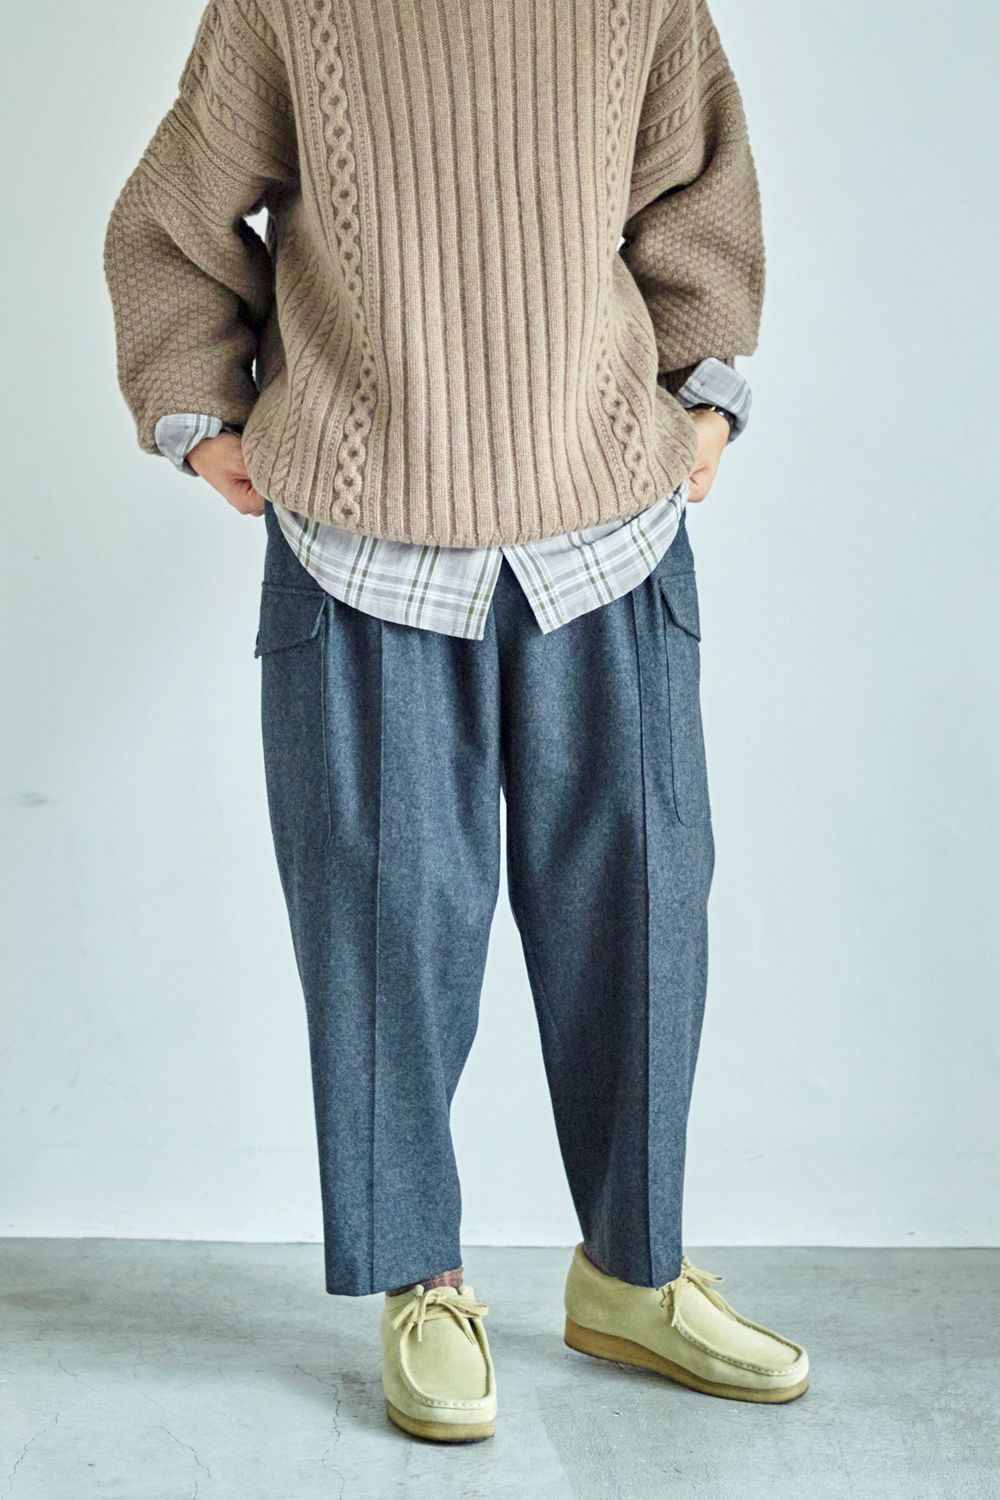 SAYATOMO - 【ラスト1点】【22AW】2-Tack Flannel Cargo Pants/2タック